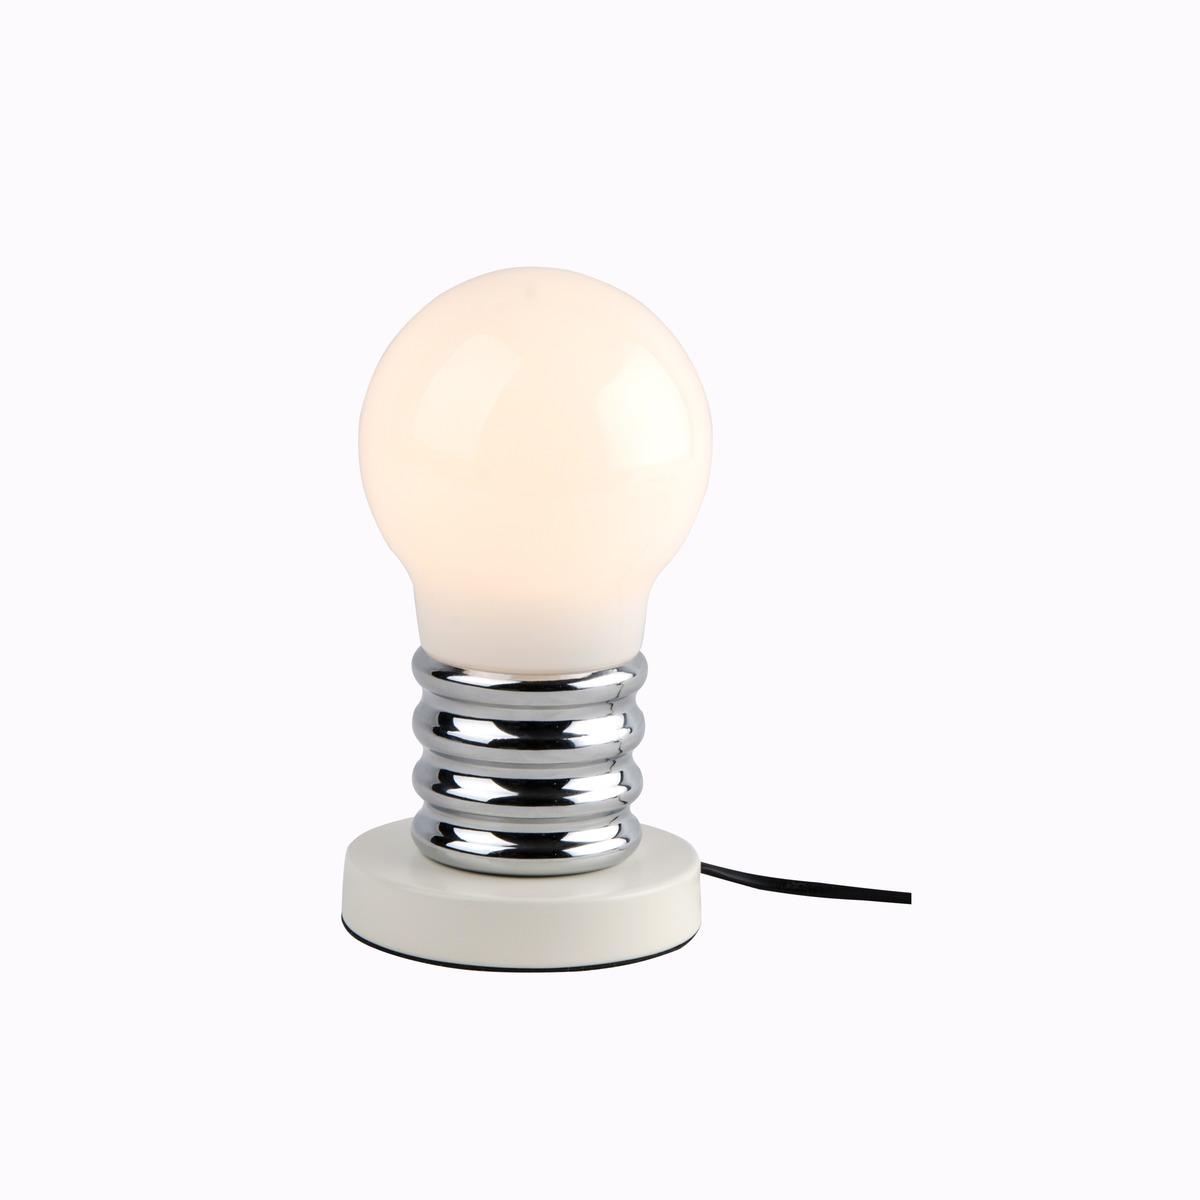 Lampe à poser forme ampoule - 15 x H 26 cm - Différents coloris